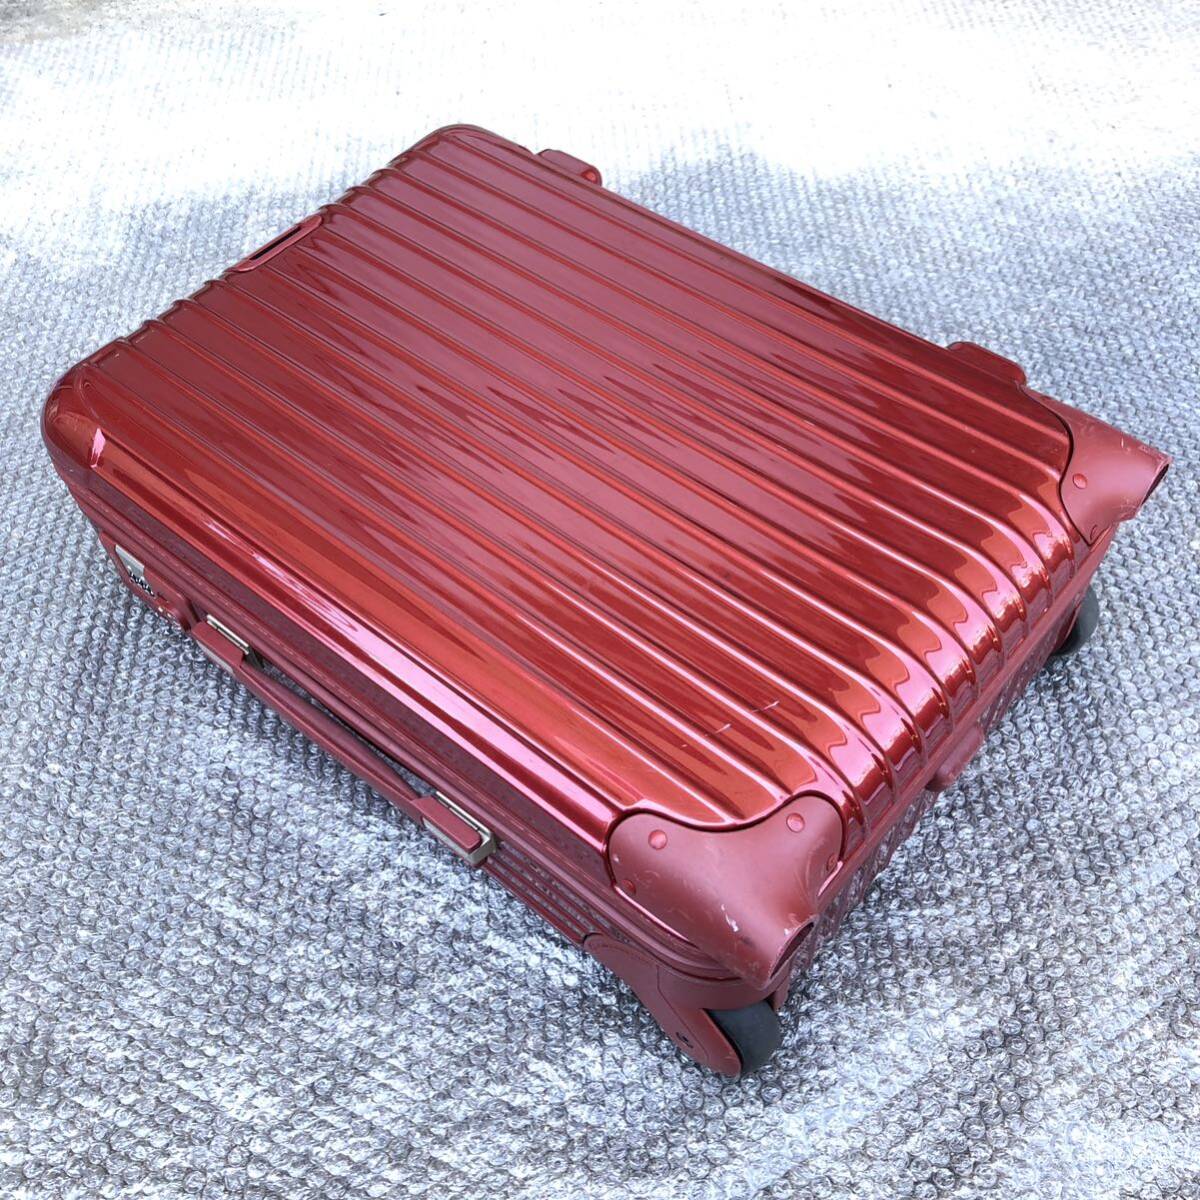 [ Rimowa ] подлинный товар RIMOWA чемодан SALSA DELUXE cальса Deluxe 853 52 TSA блокировка 2 колесо Carry кейс 35L красный цвет серия путешествие сумка 